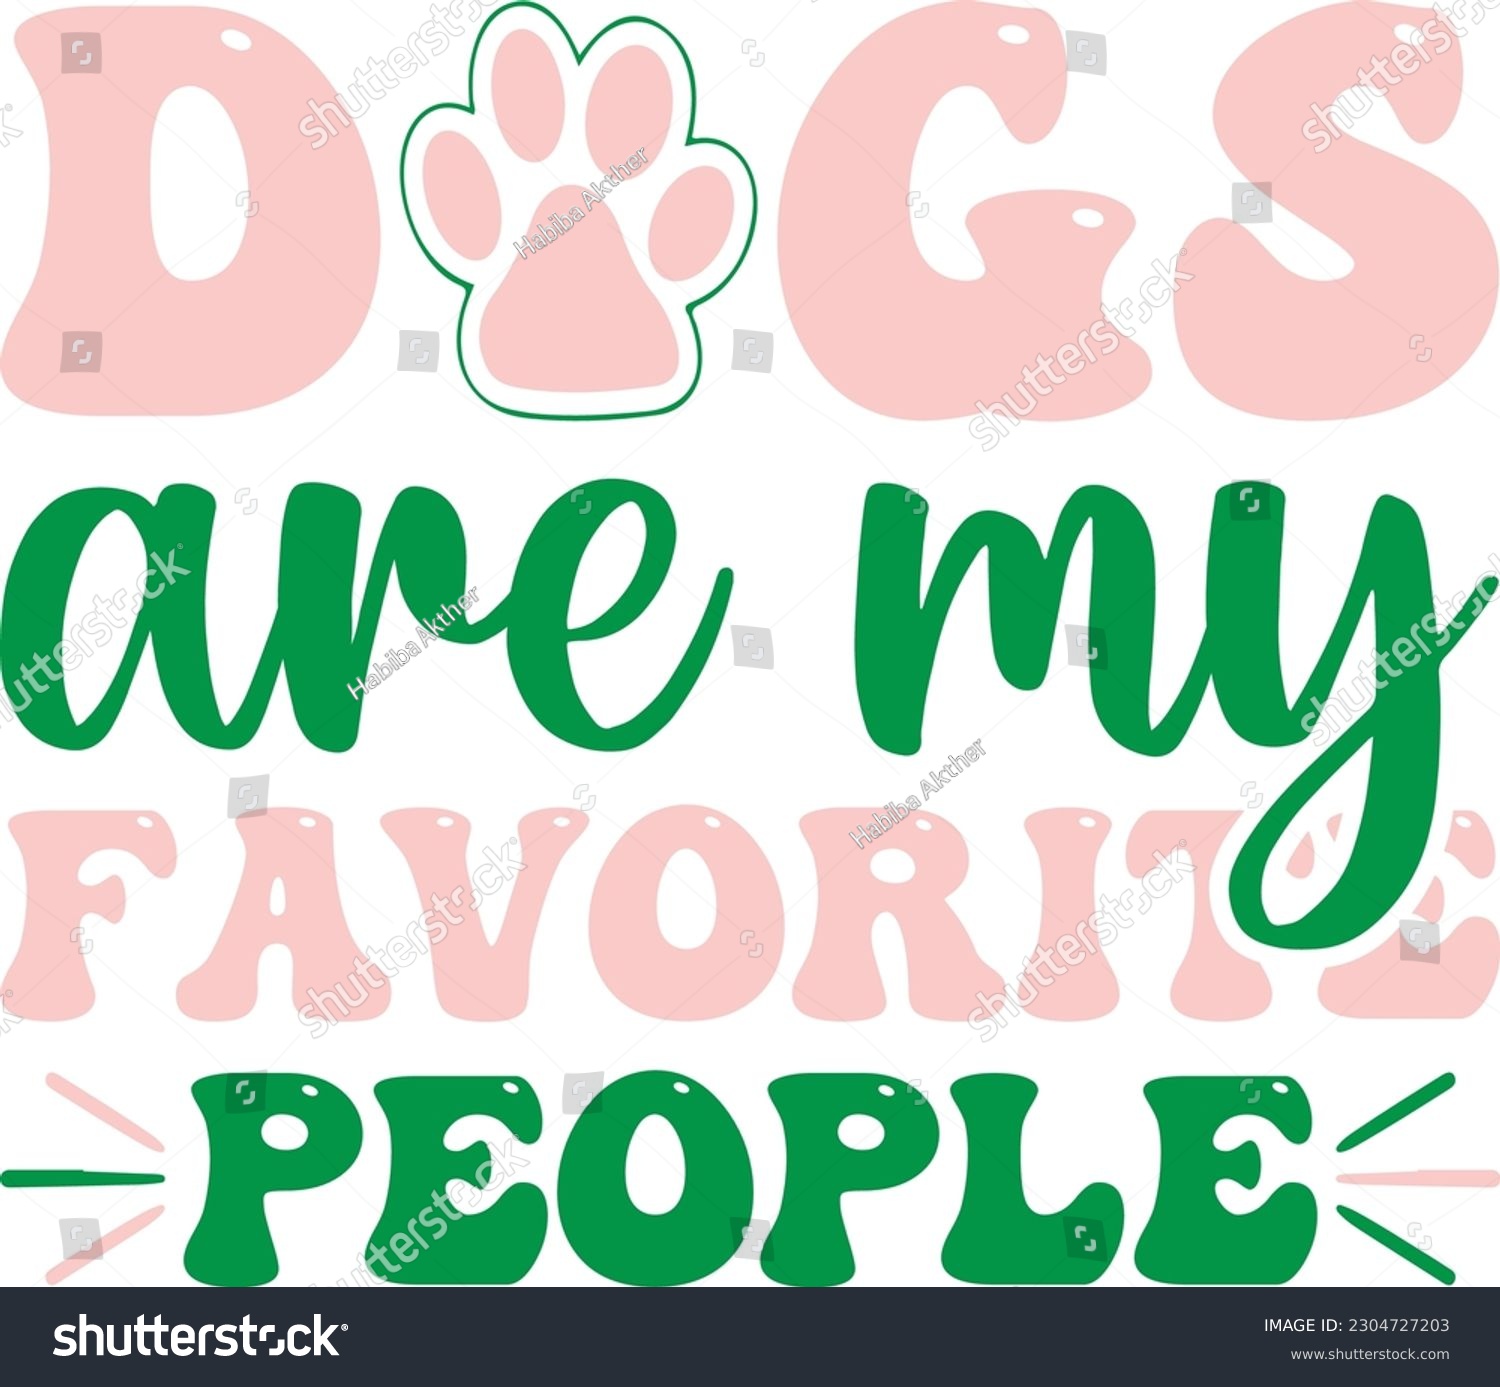 SVG of Dogs are my favorite people,Dog mom,Puppy Love,Dog Mom Svg,Dog SVG,Silhouette,Dog Owner Svg, Funny Svg, Fur Mom Shirt Svg,Wine,Dog Mama,Dog Heart,Dog Paw,Eps,Labrador Svg,Pet Svg,Vector, svg